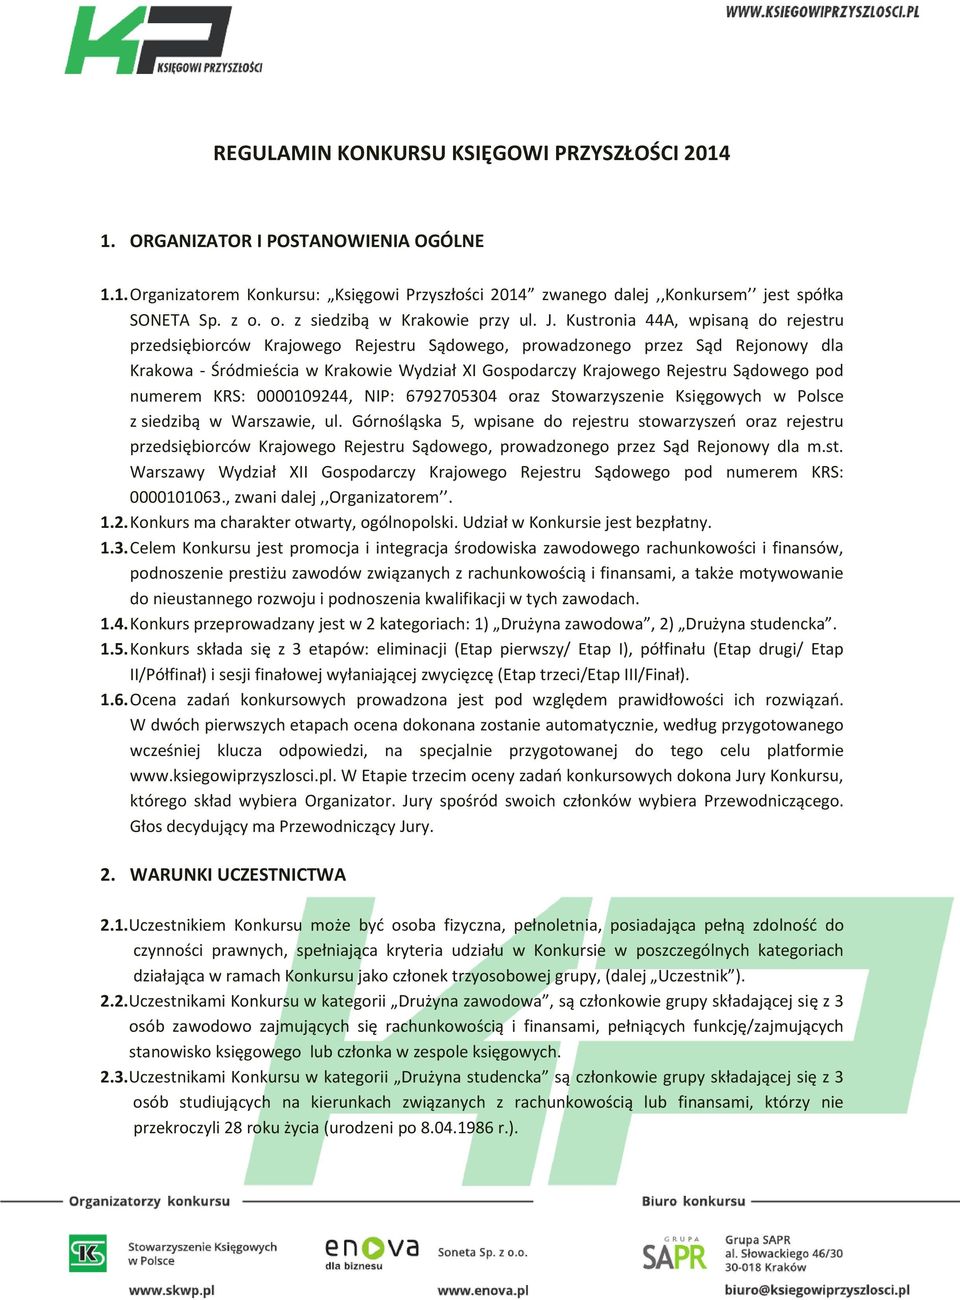 Kustronia 44A, wpisaną do rejestru przedsiębiorców Krajowego Rejestru Sądowego, prowadzonego przez Sąd Rejonowy dla Krakowa - Śródmieścia w Krakowie Wydział XI Gospodarczy Krajowego Rejestru Sądowego